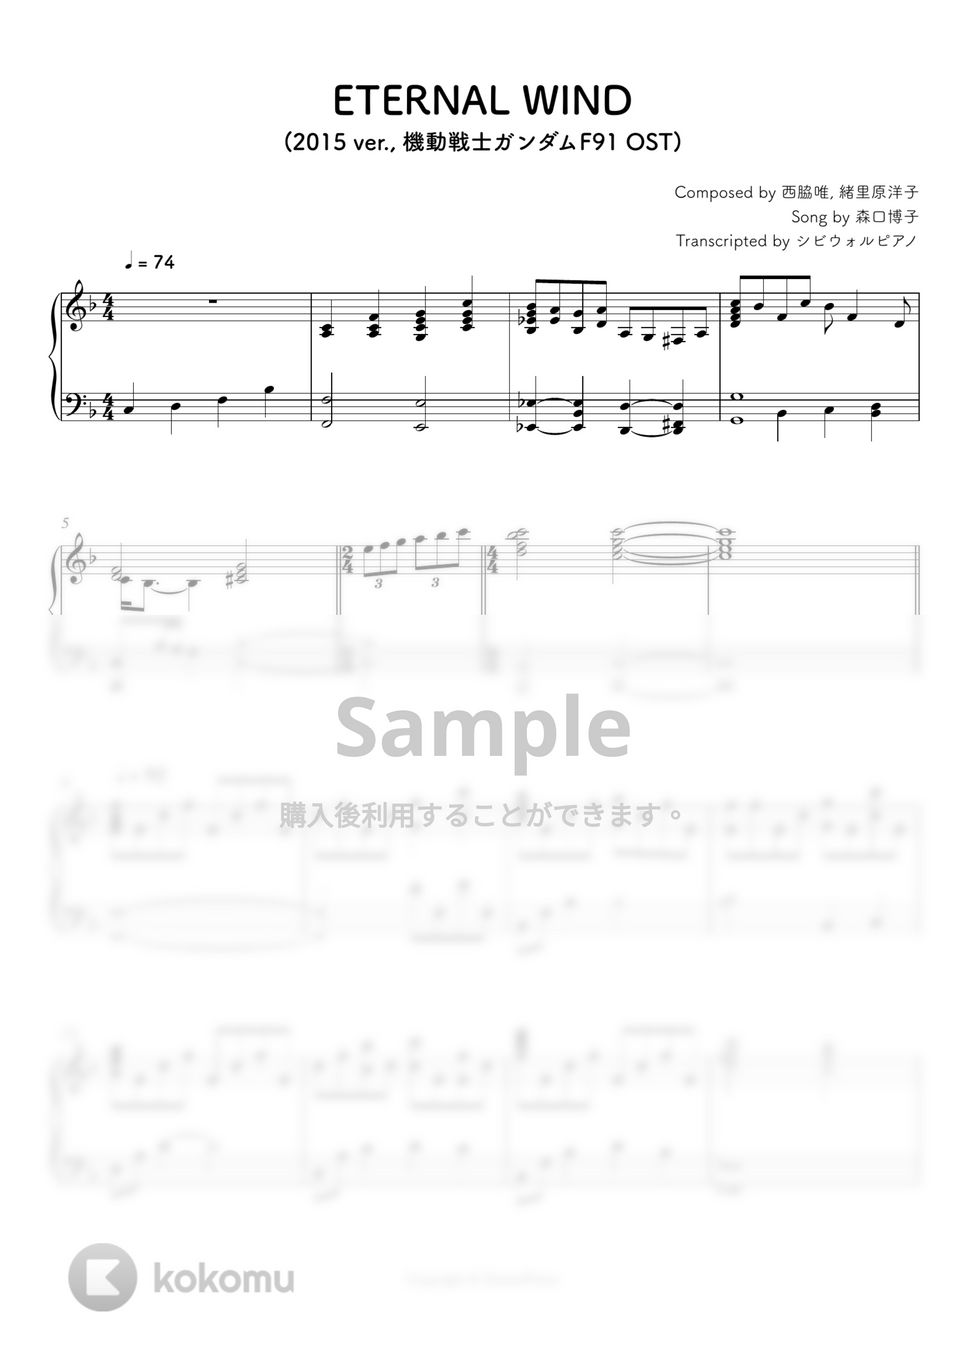 機動戦士ガンダムF91 - ETERNAL WIND (2015 ver.) by シビウォルピアノ